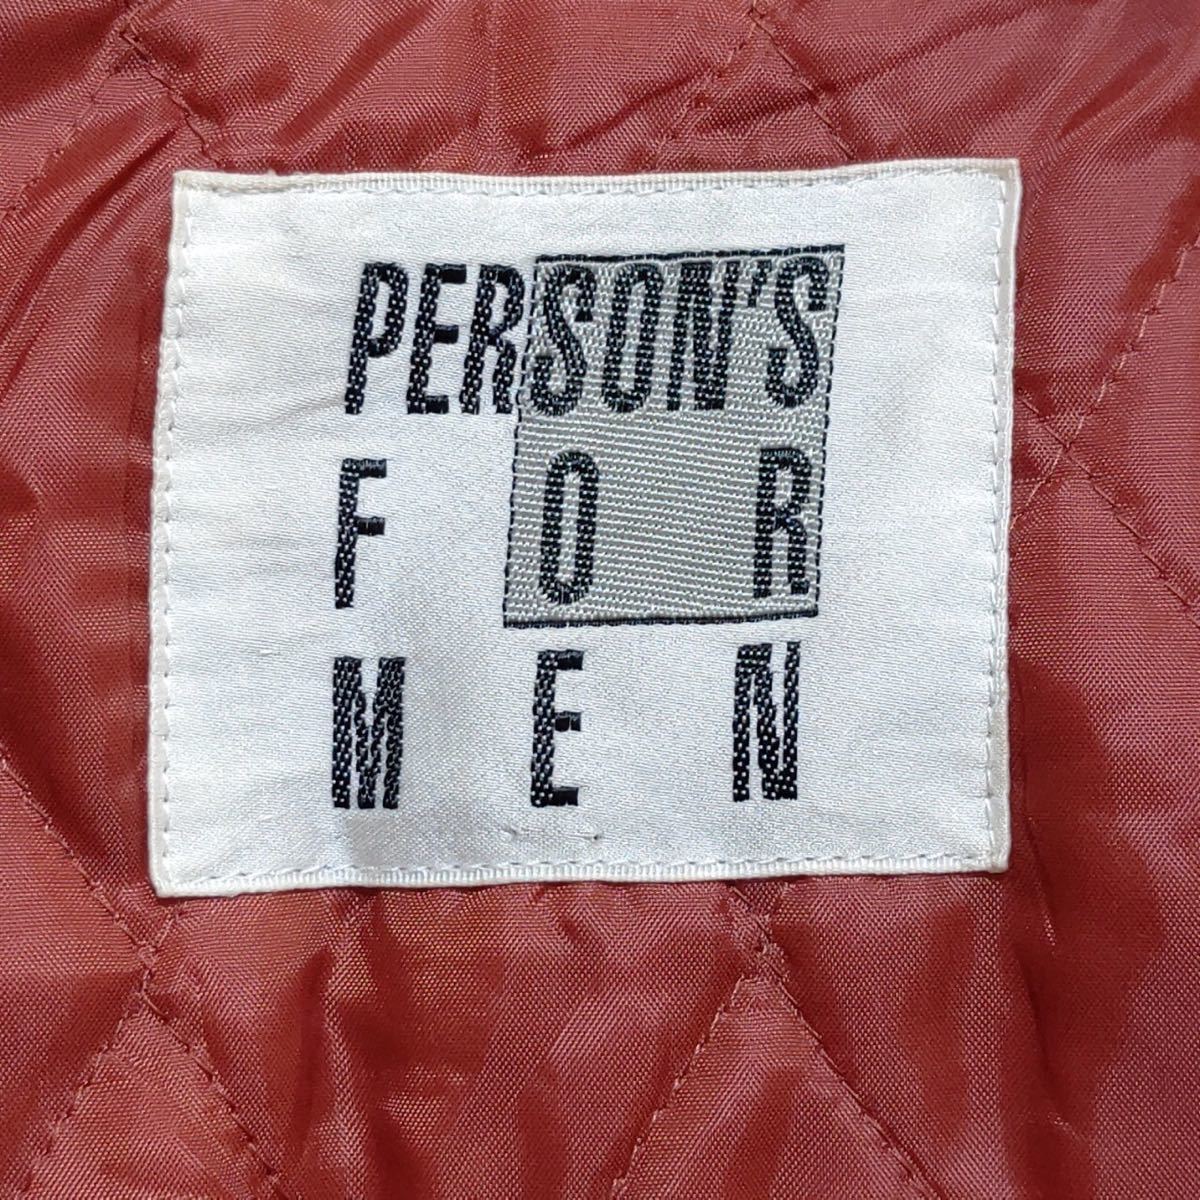 【PERSON’S FOR MEN】パーソンズフォーメン マウンテン パーカー オレンジ メンズ ウインド ブレーカー 日本製 中綿 綿100% 上着 /9721jB_画像8